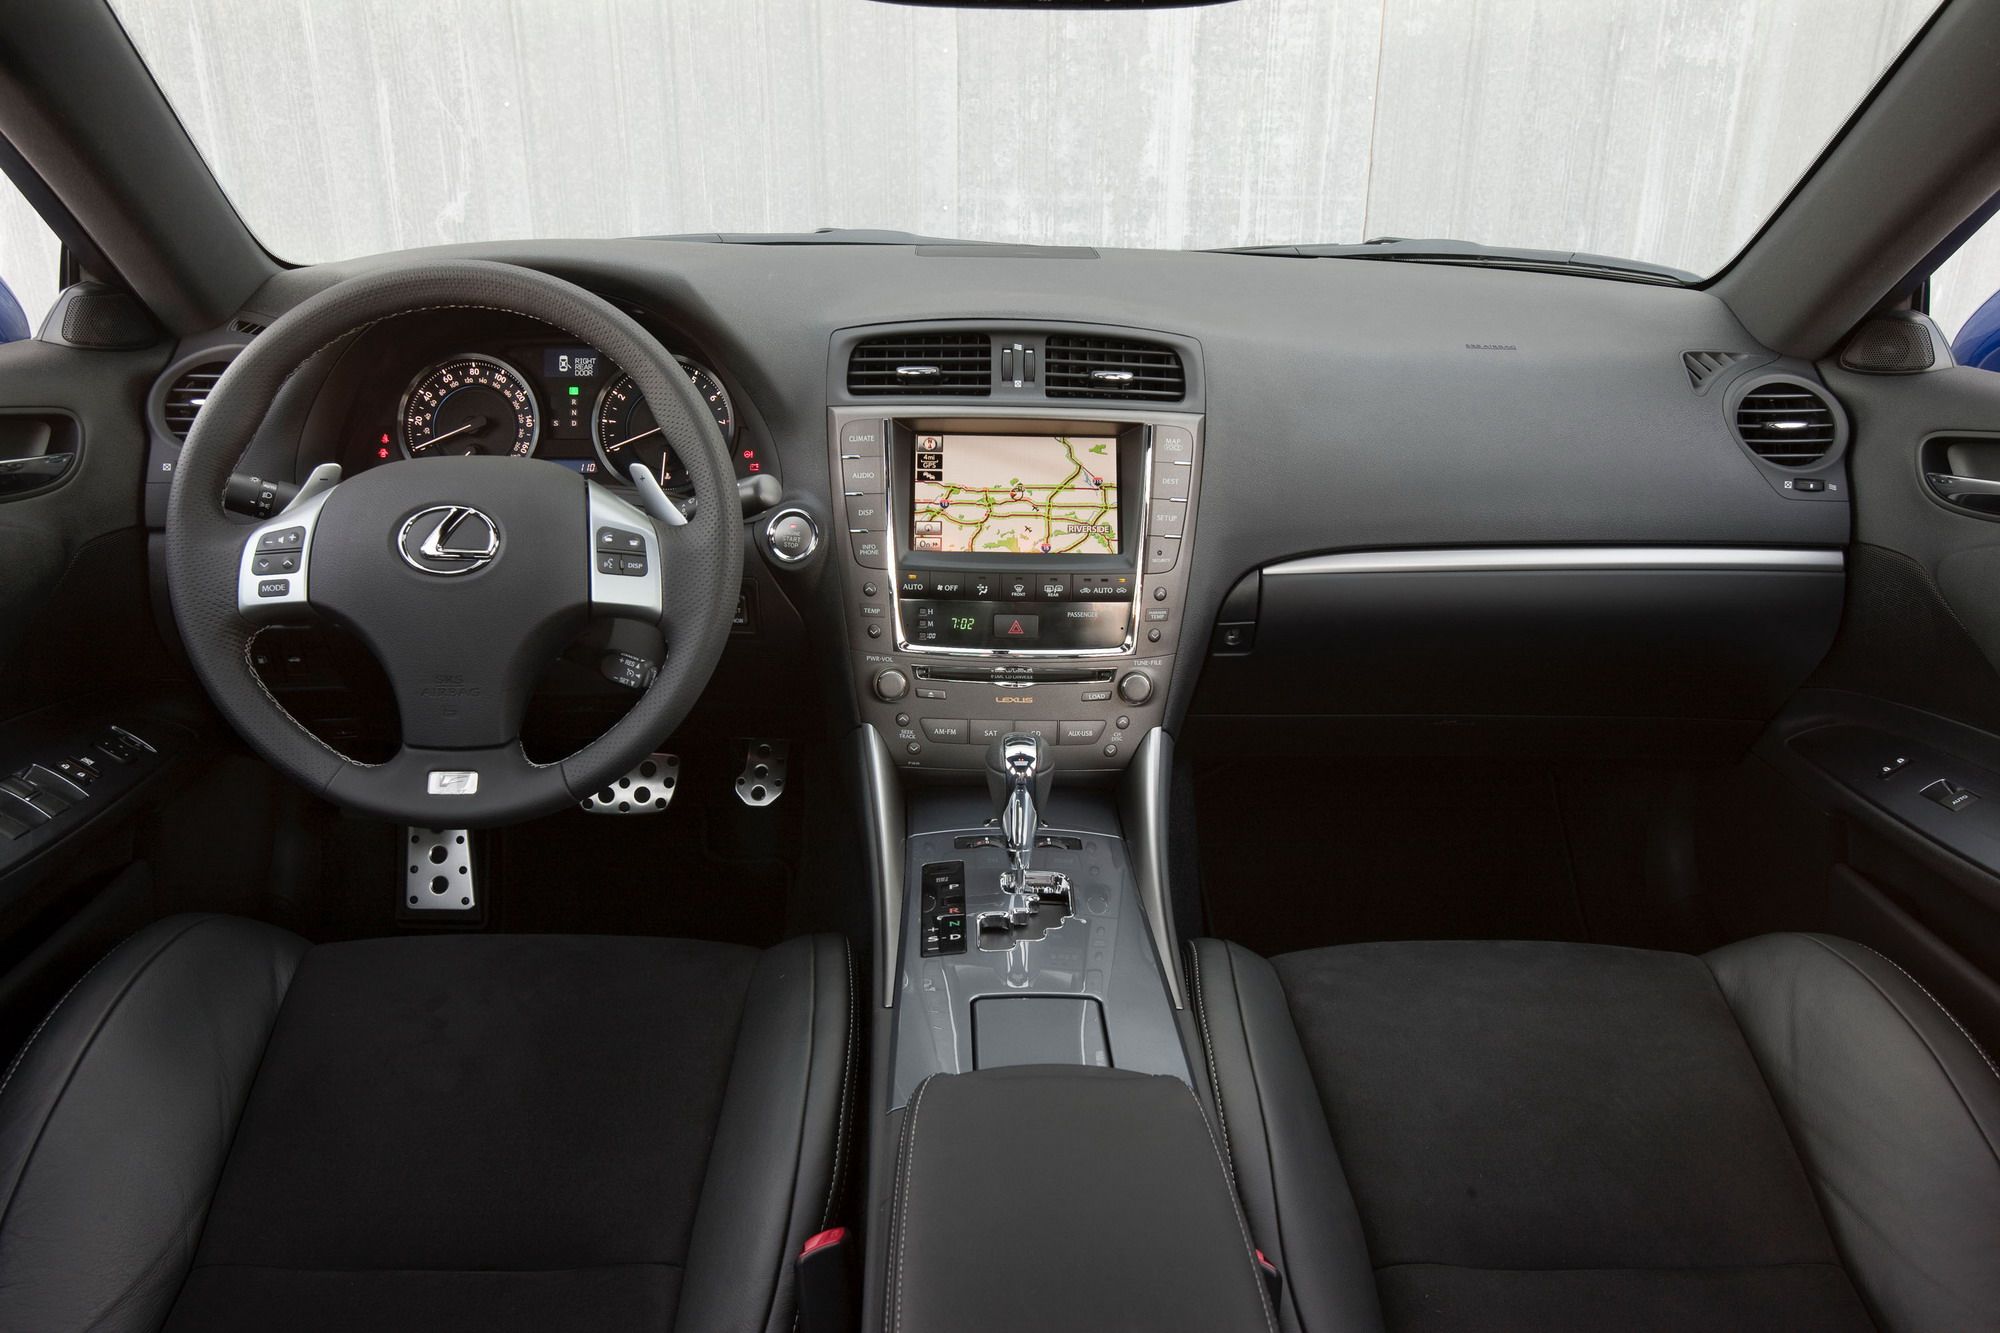 2011 Lexus IS